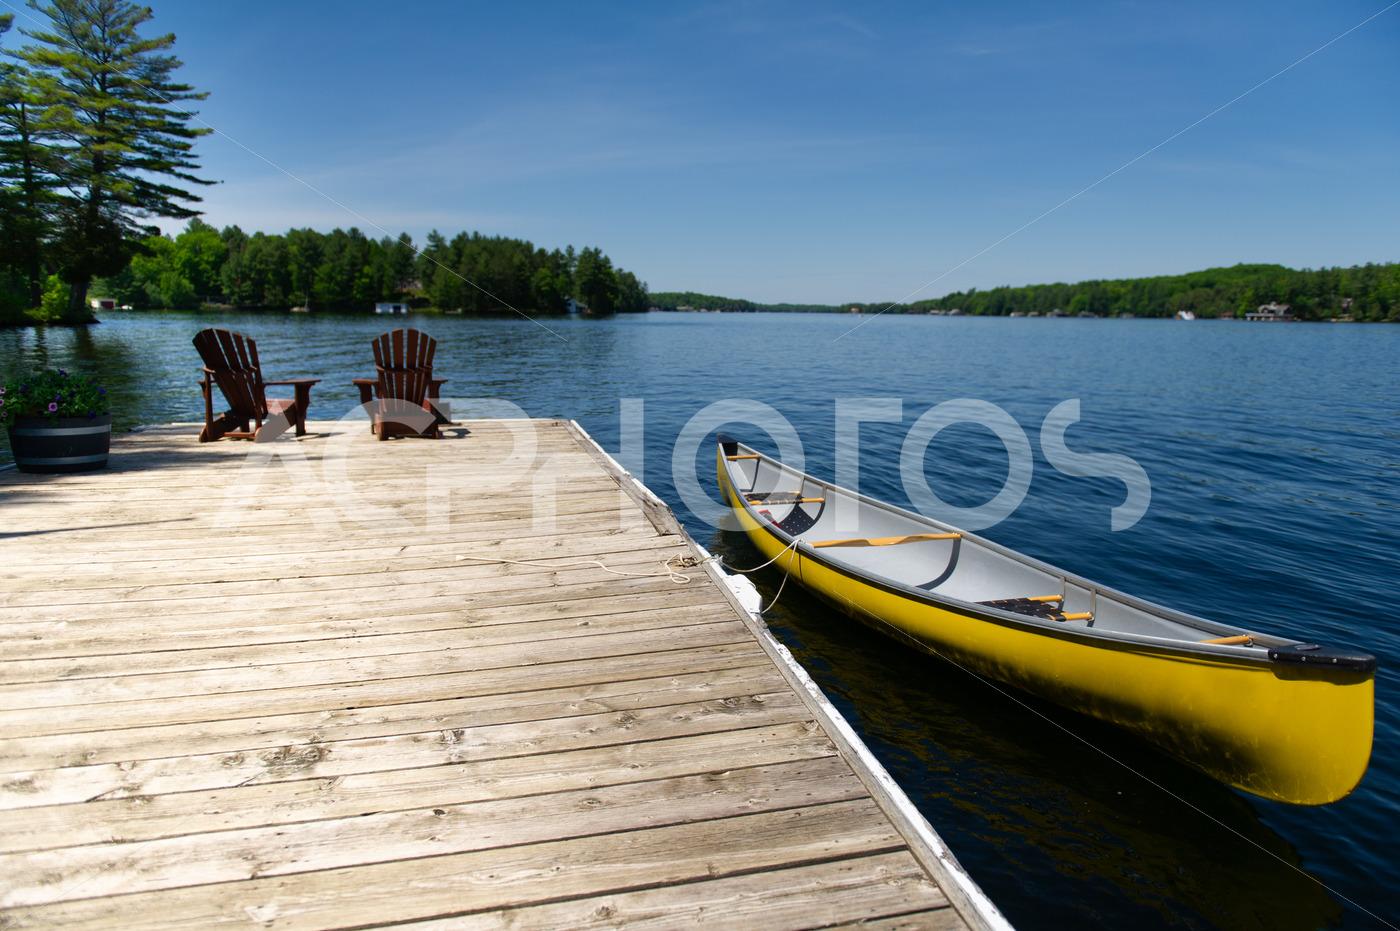 Adirondack chairs 038 canoe 2754